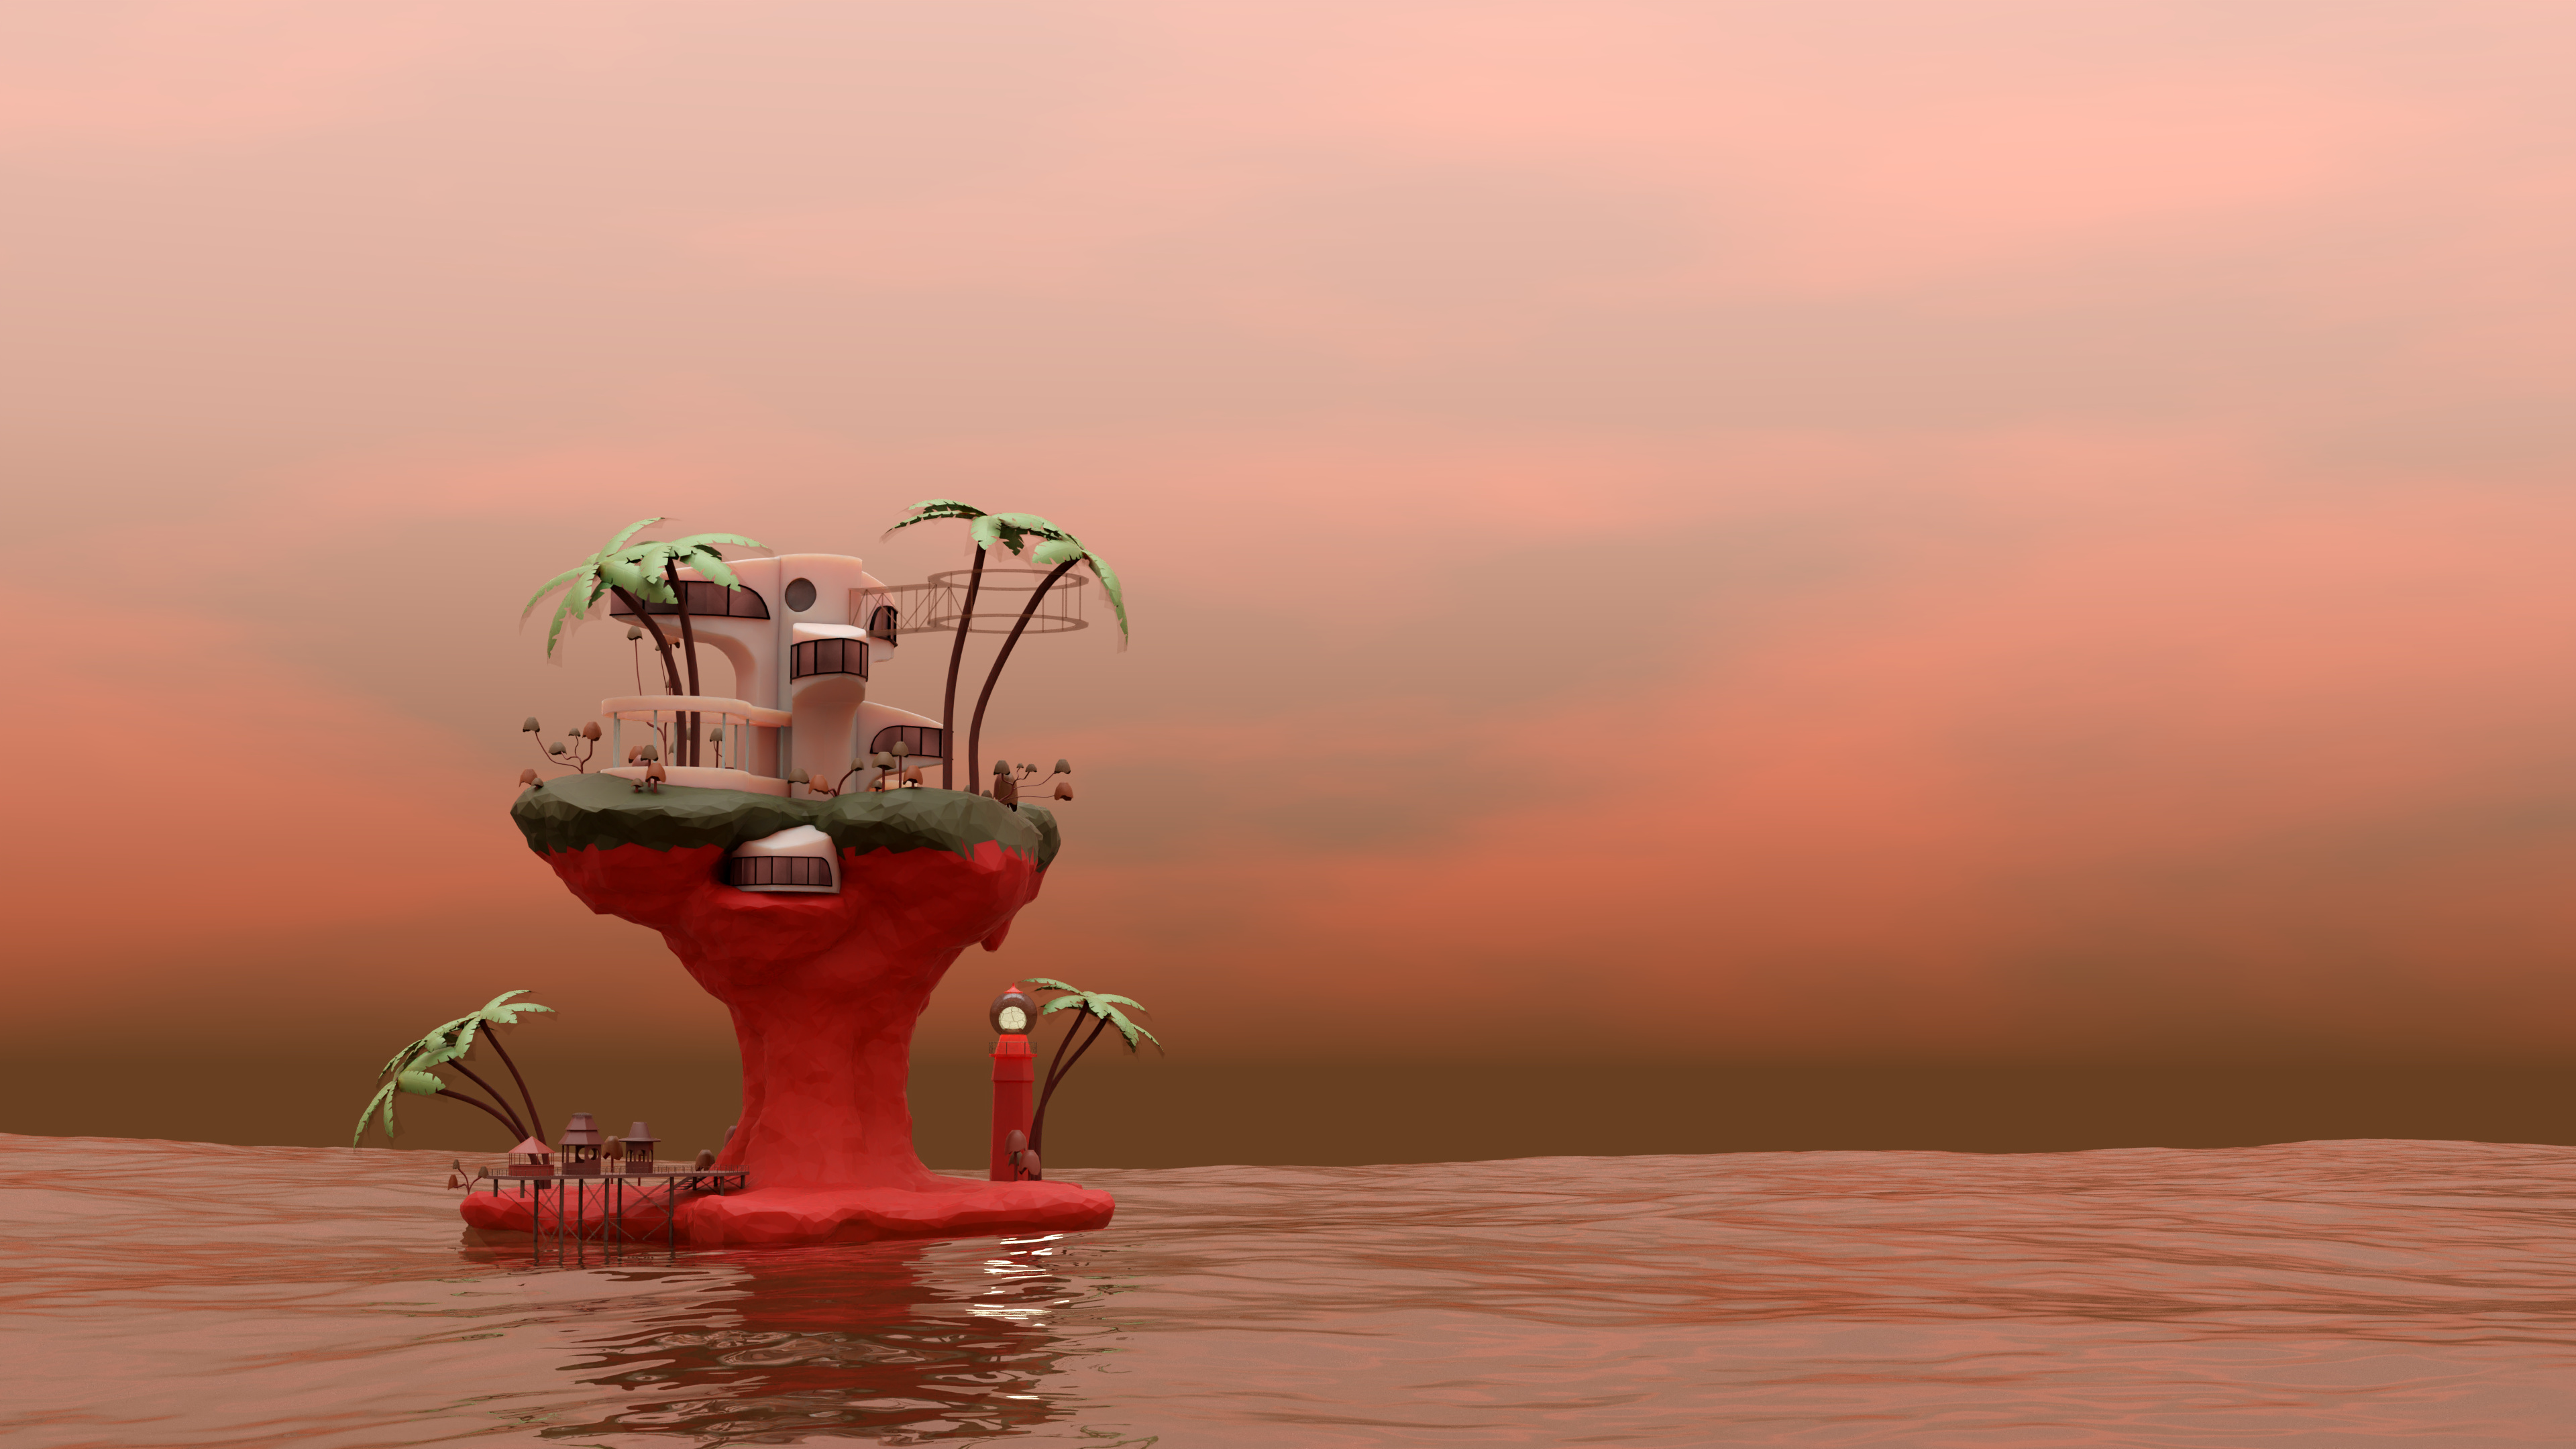 Gorillaz, Plastic Beach renders, 3D modeling, Imagination brought to life, 3840x2160 4K Desktop